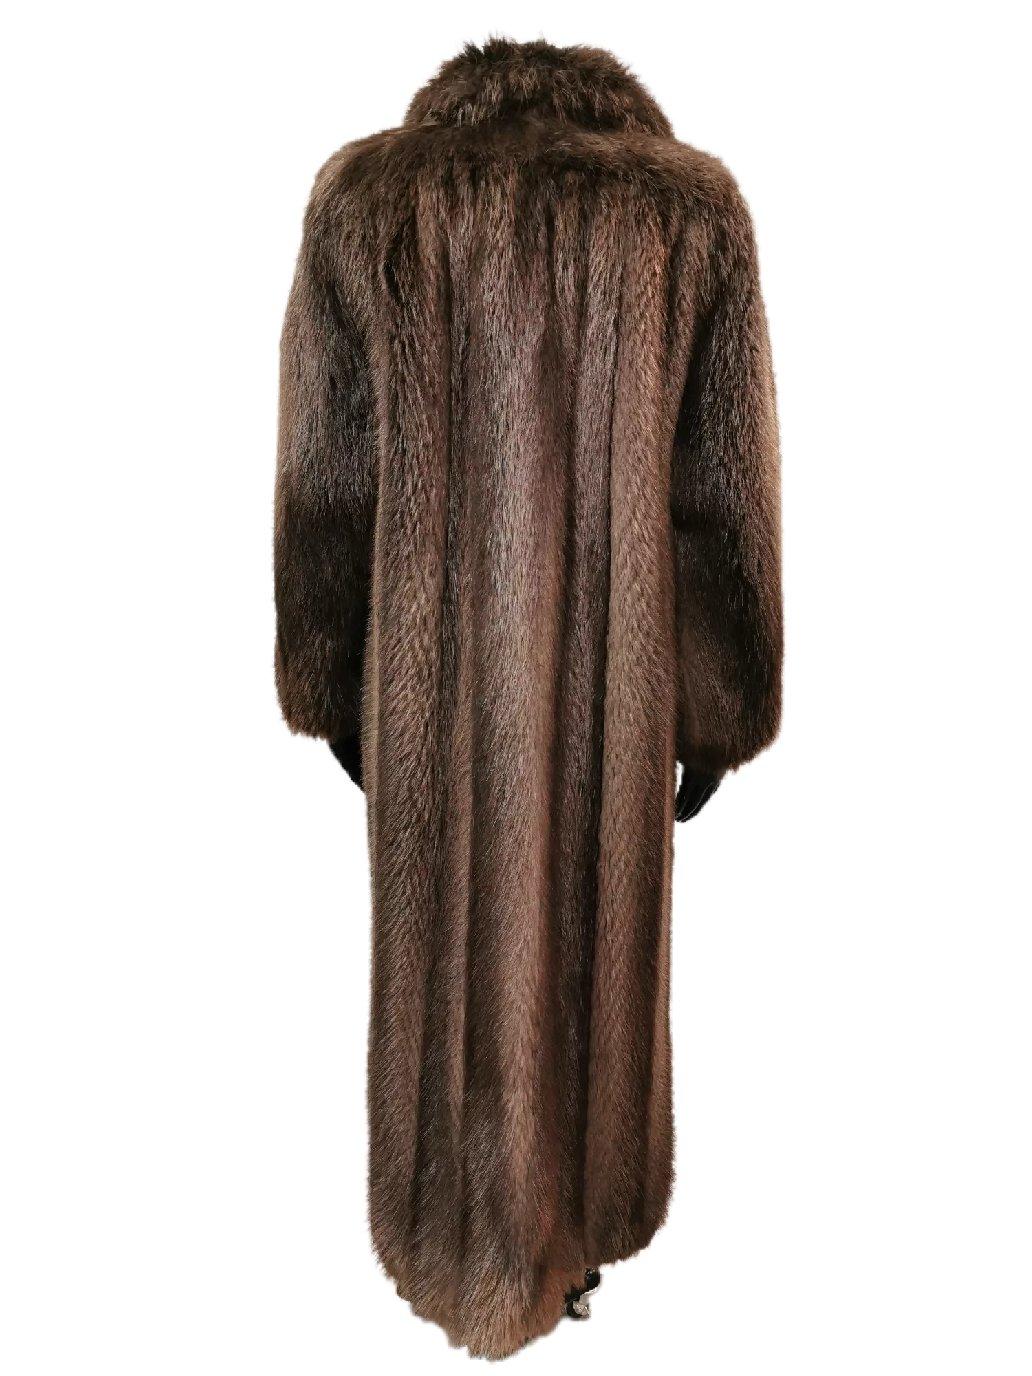 Black Brand new Birger christensen beaver fur coat size 14 For Sale